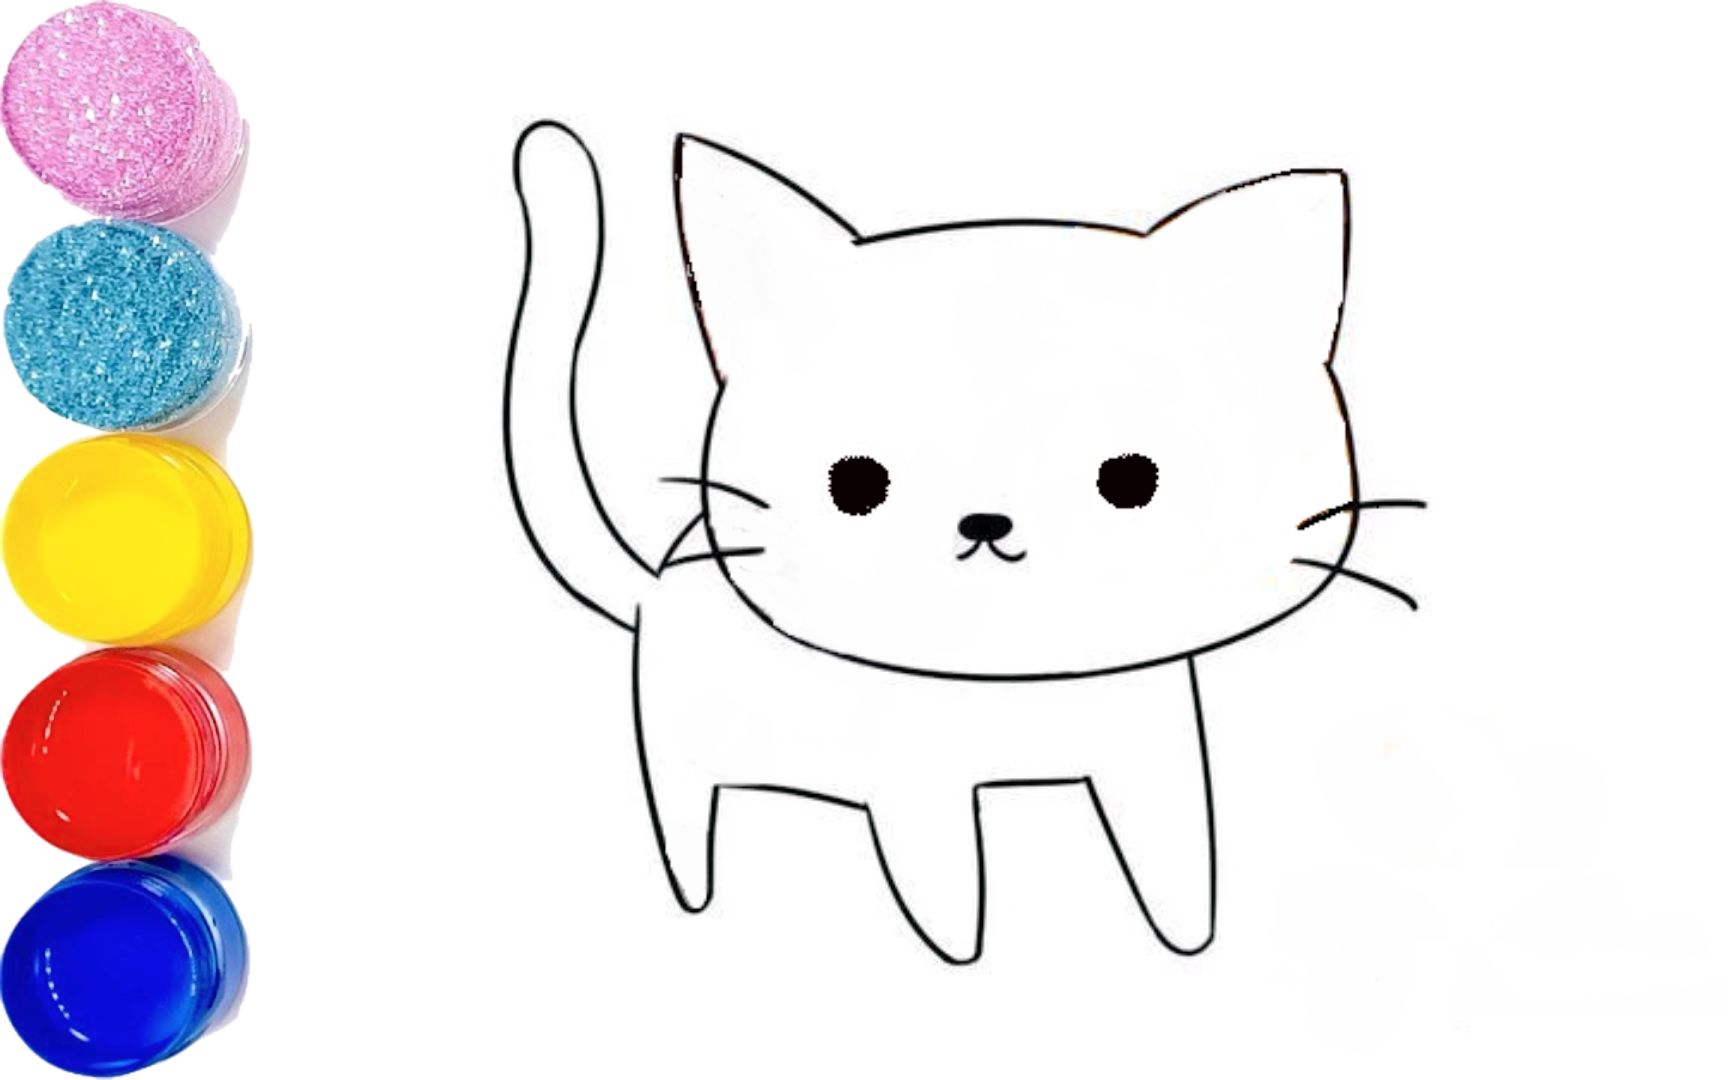 可爱小猫画法图片